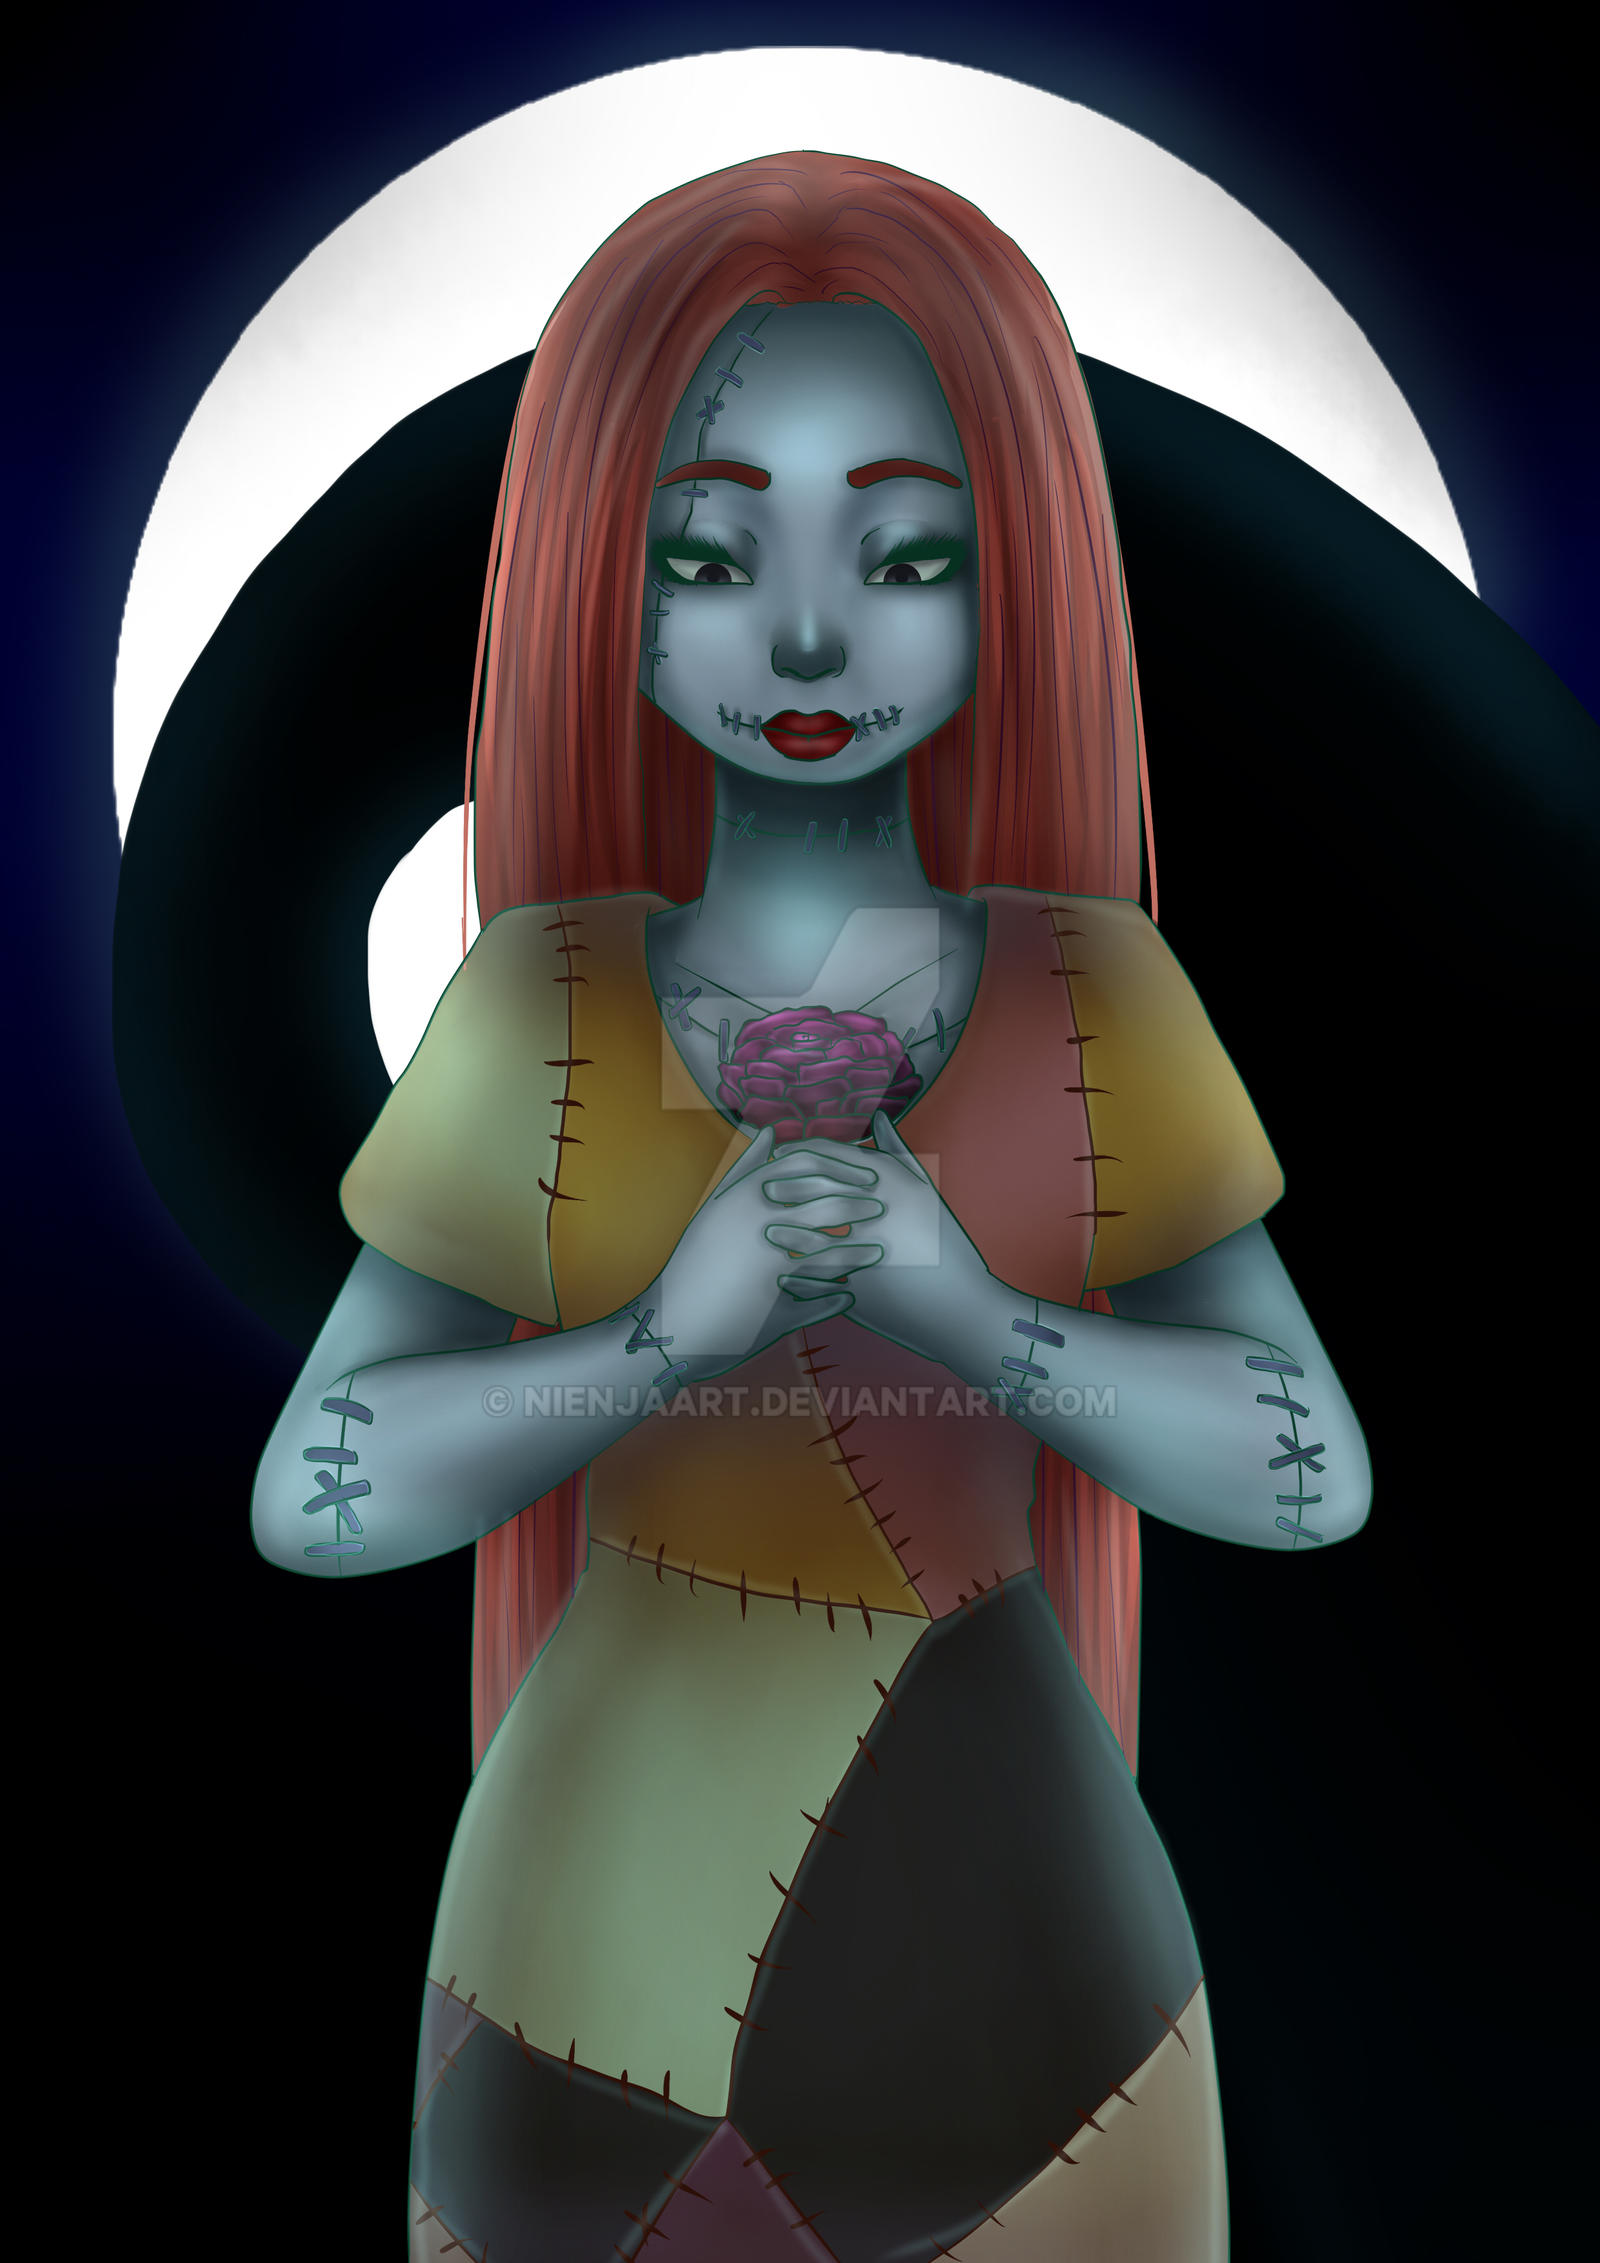 Sally - The Nightmare Before Christmas by NienjaArt on DeviantArt